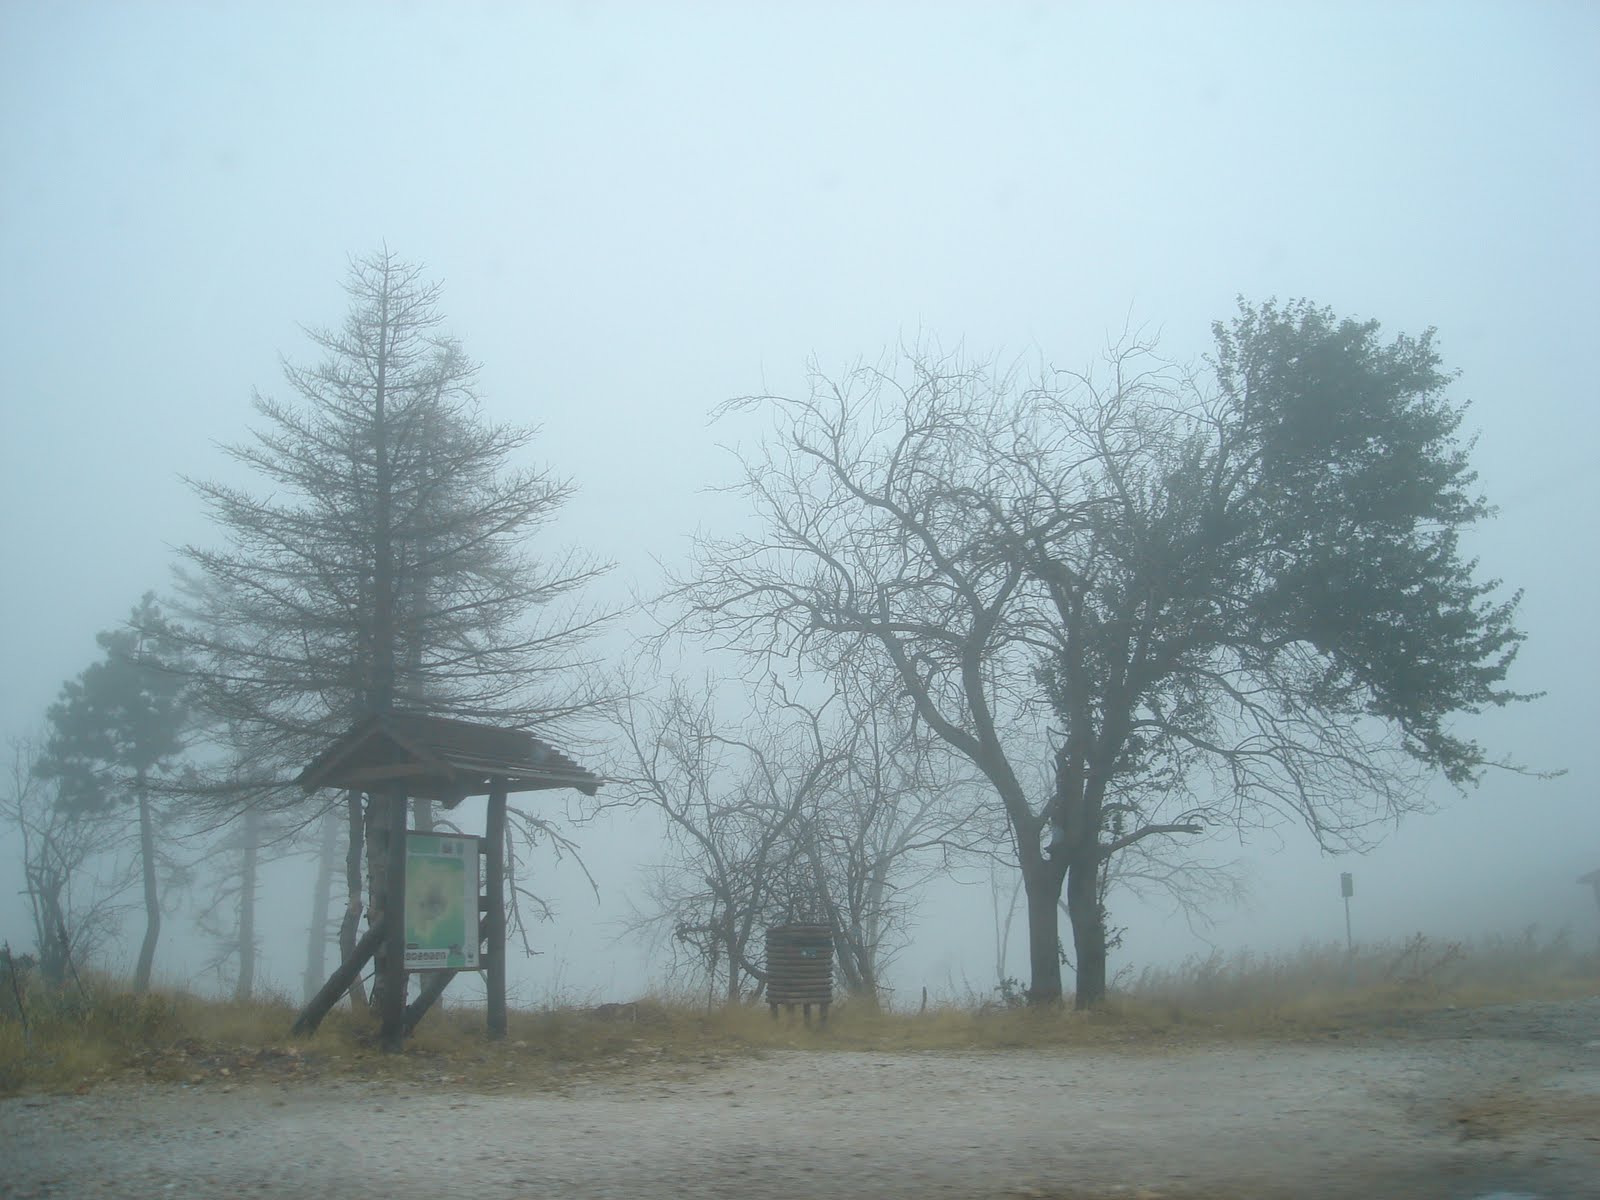 Μαγικό τοπίο δημιούργησε η ομίχλη στην Πάρνηθα (φωτό)